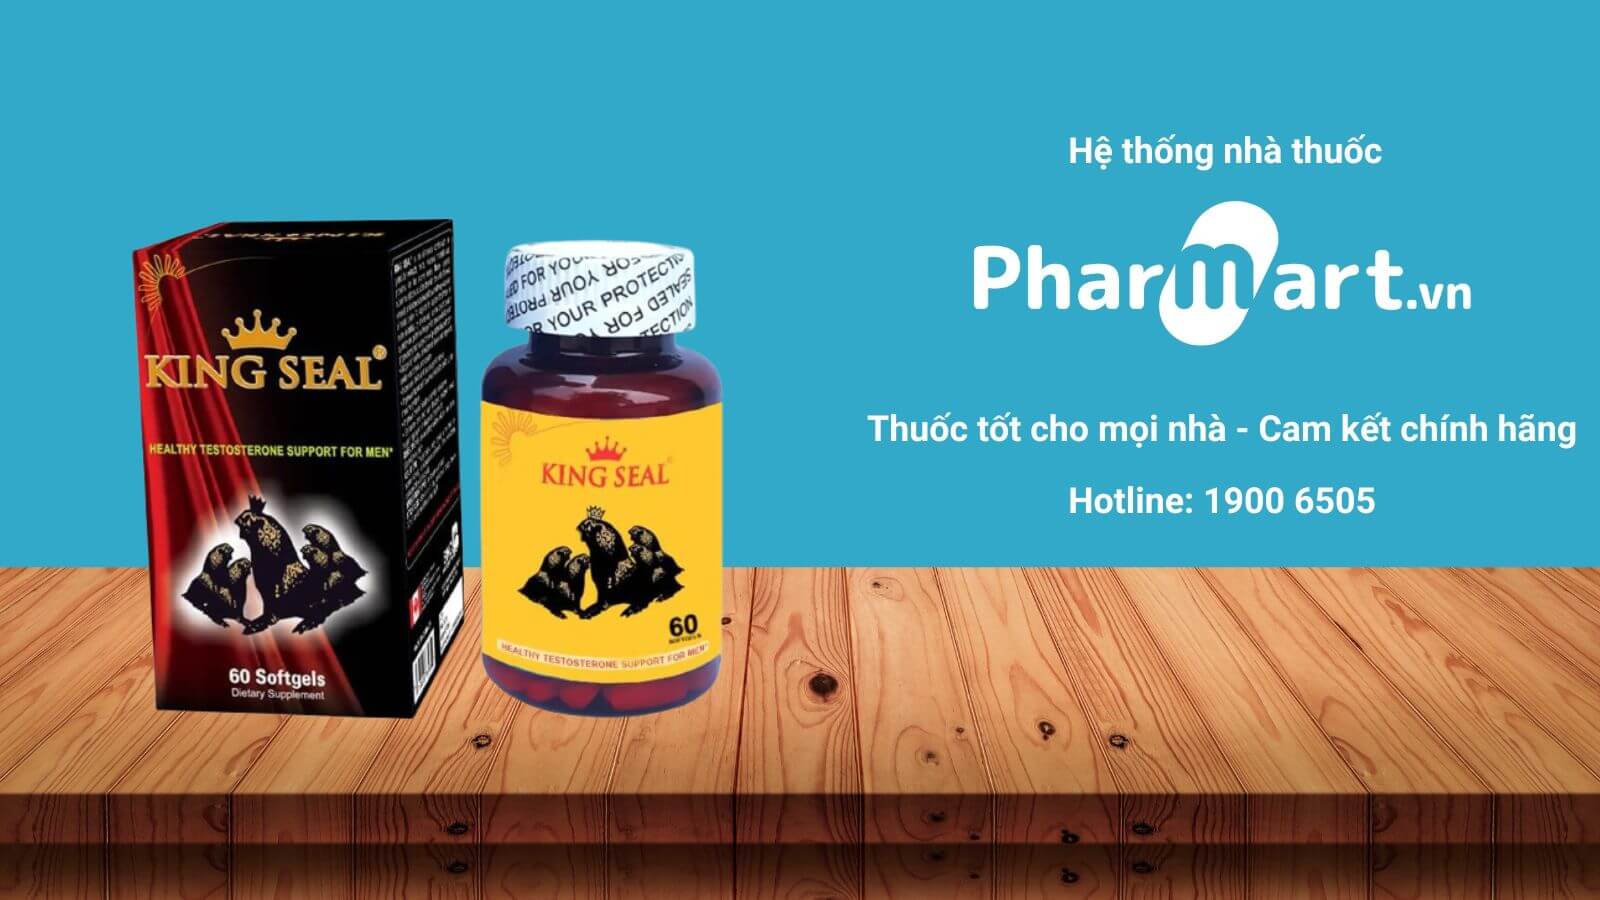 Mua King Seal chính hãng tại Pharmart.vn 